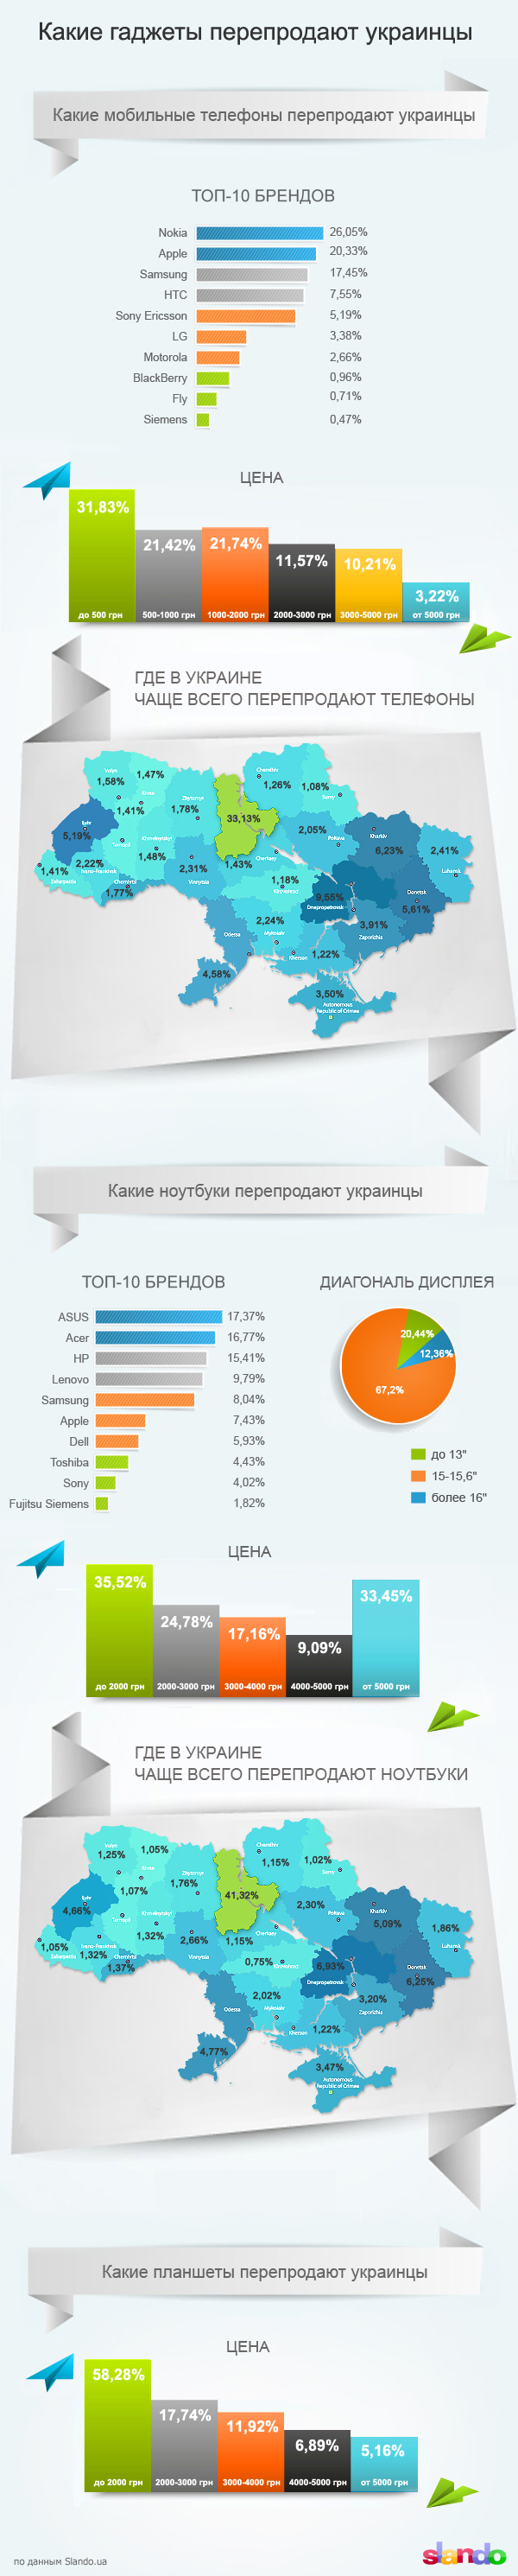 Инфографика: самые перепродаваемые гаджеты в Украине по версии Slando-2